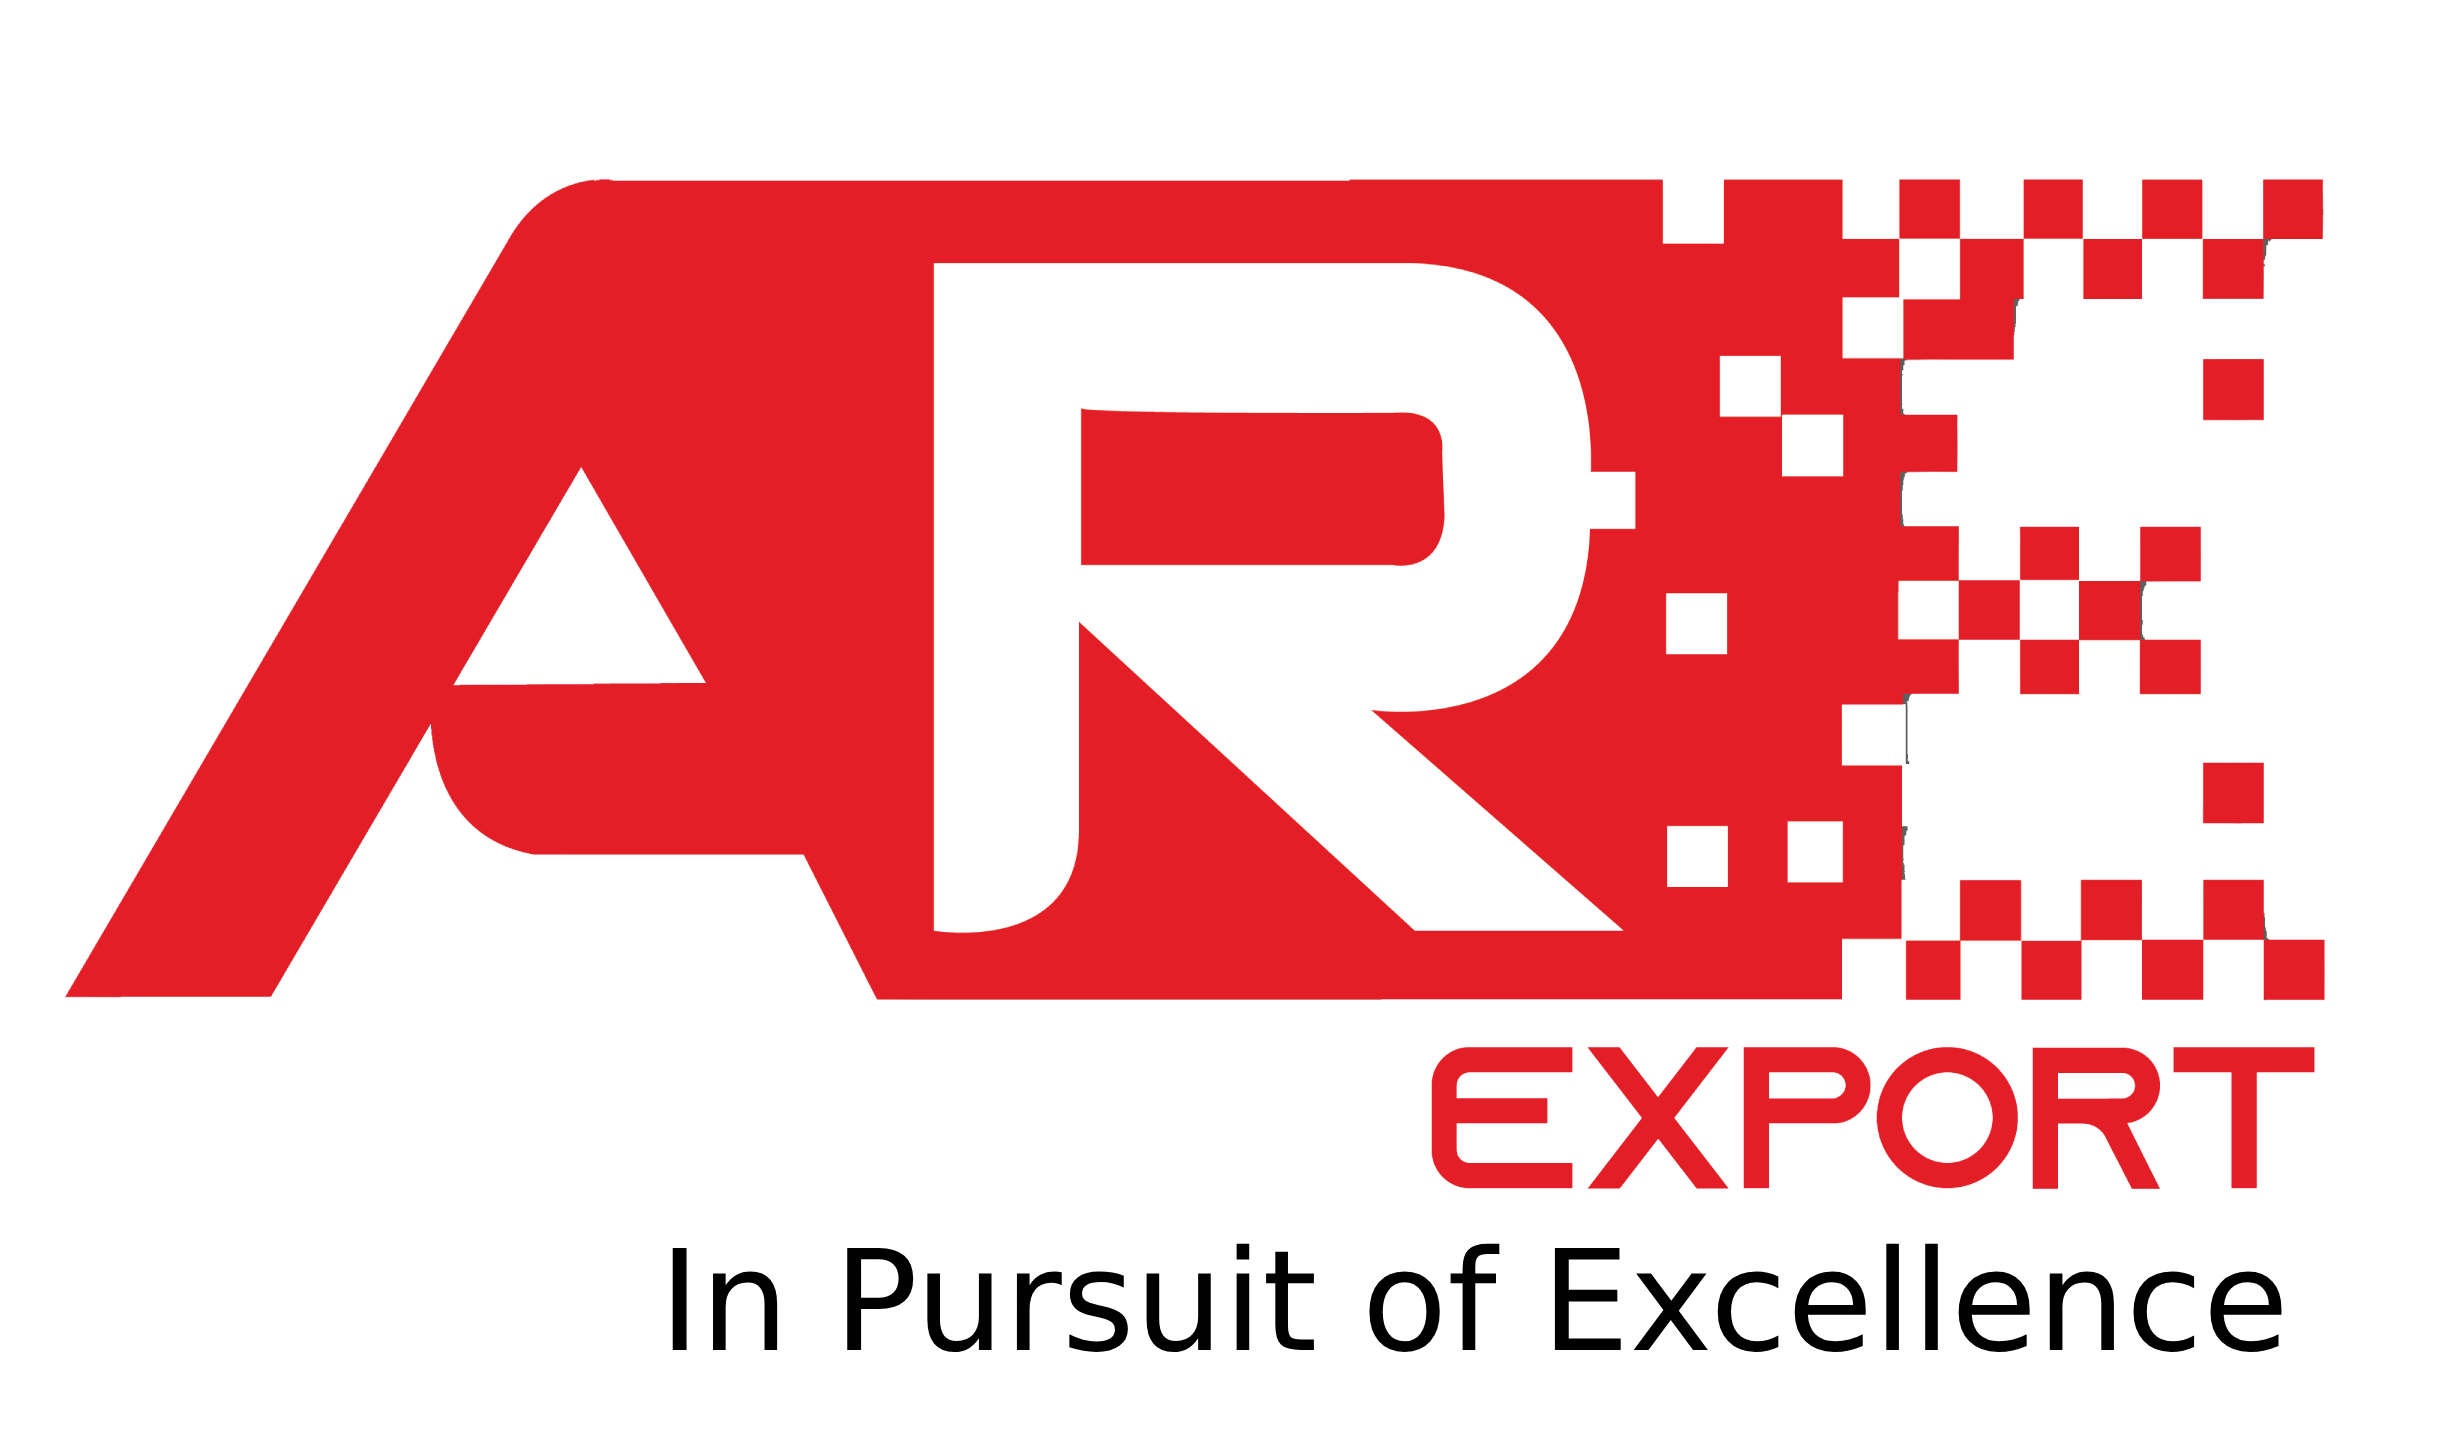 amit raj export logo